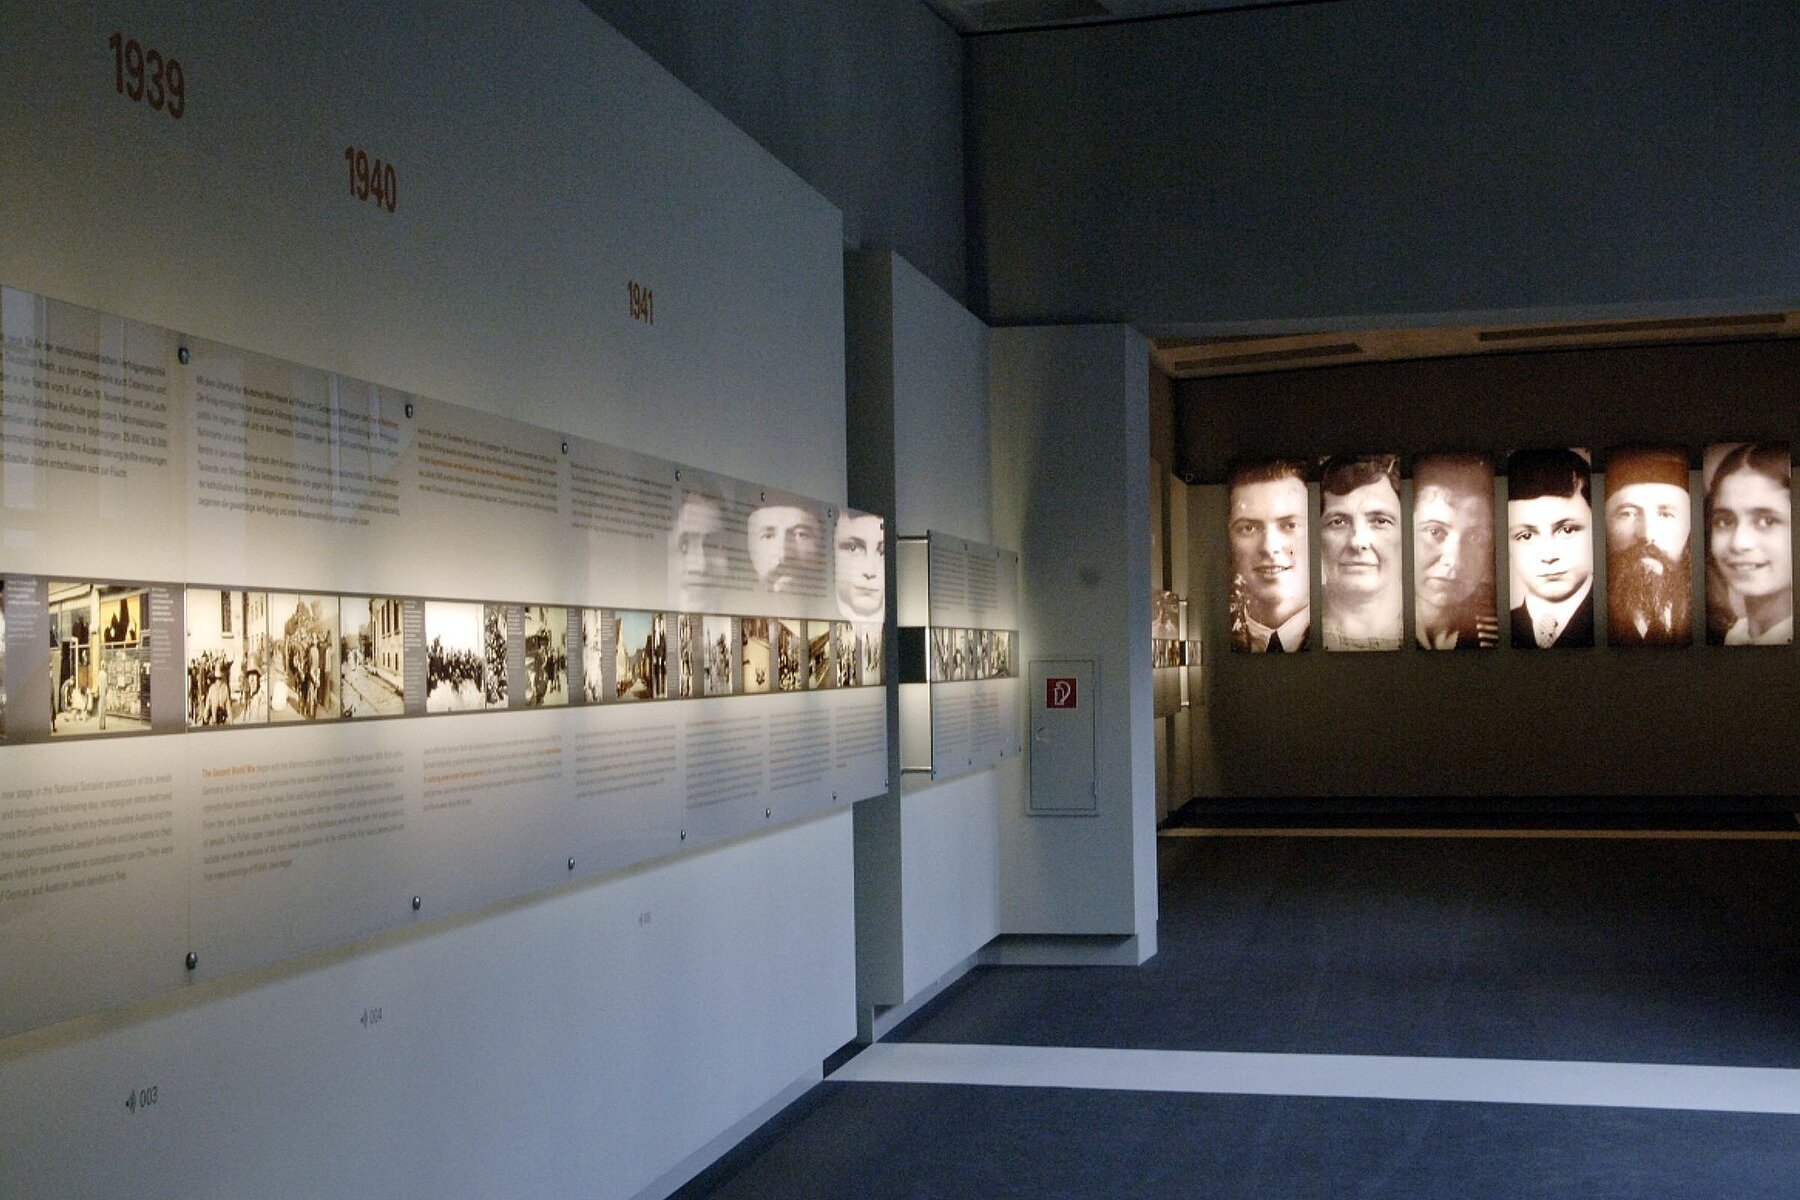 Wände im unterirdischen Ort der Information mit großen Porträts, kleinen Bildern und Texten.